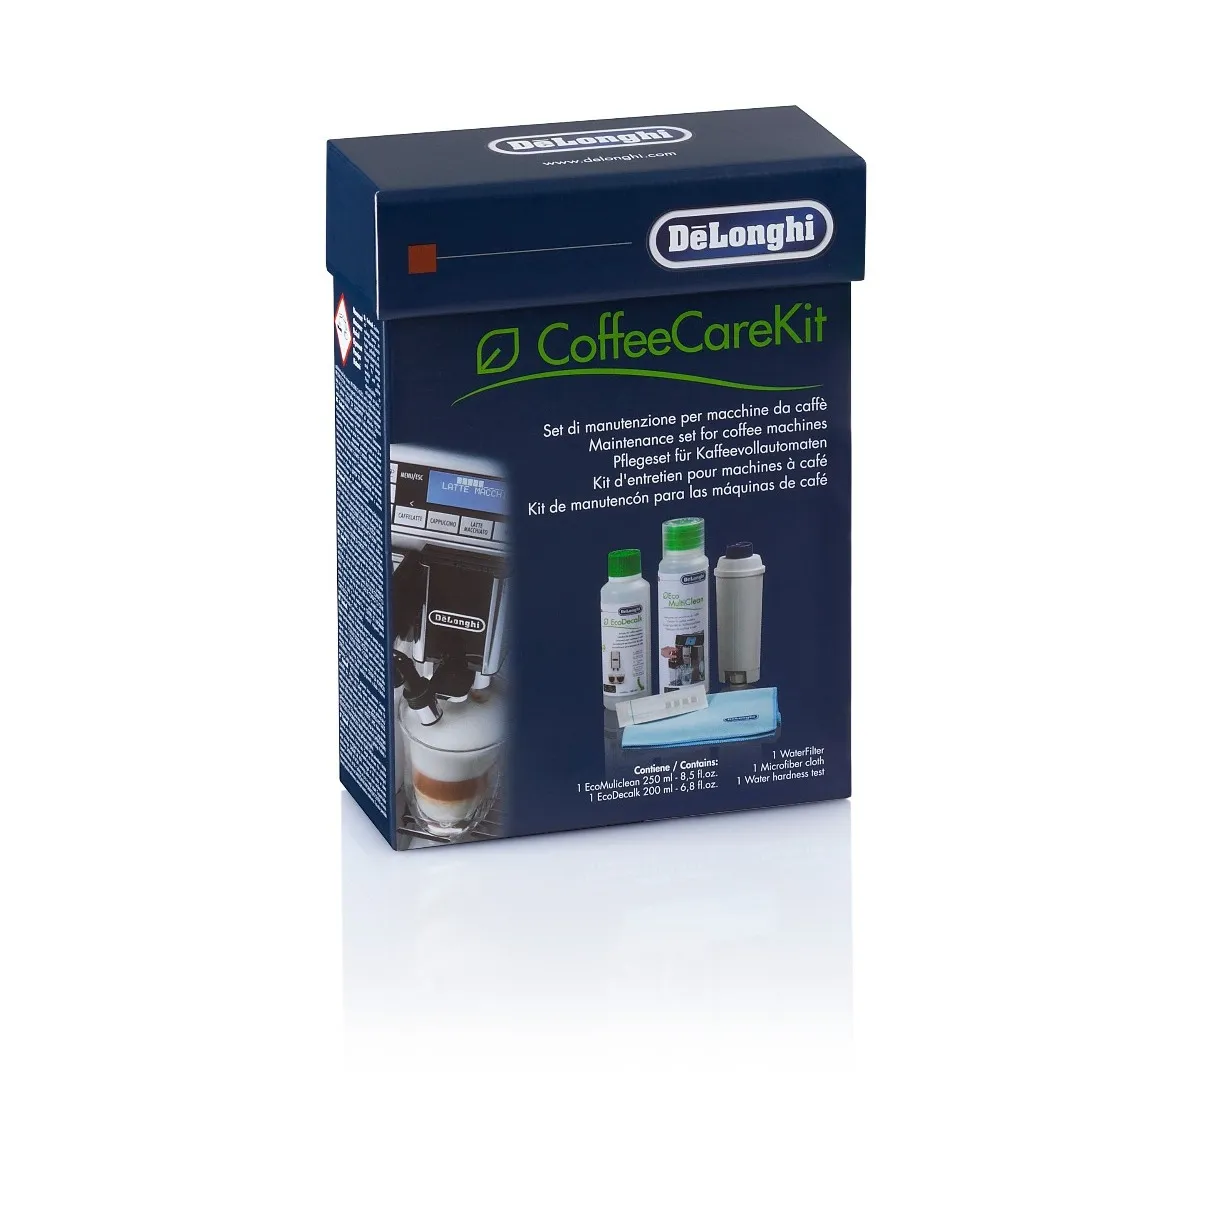 DeLonghi DLSC306 Coffee Care Kit